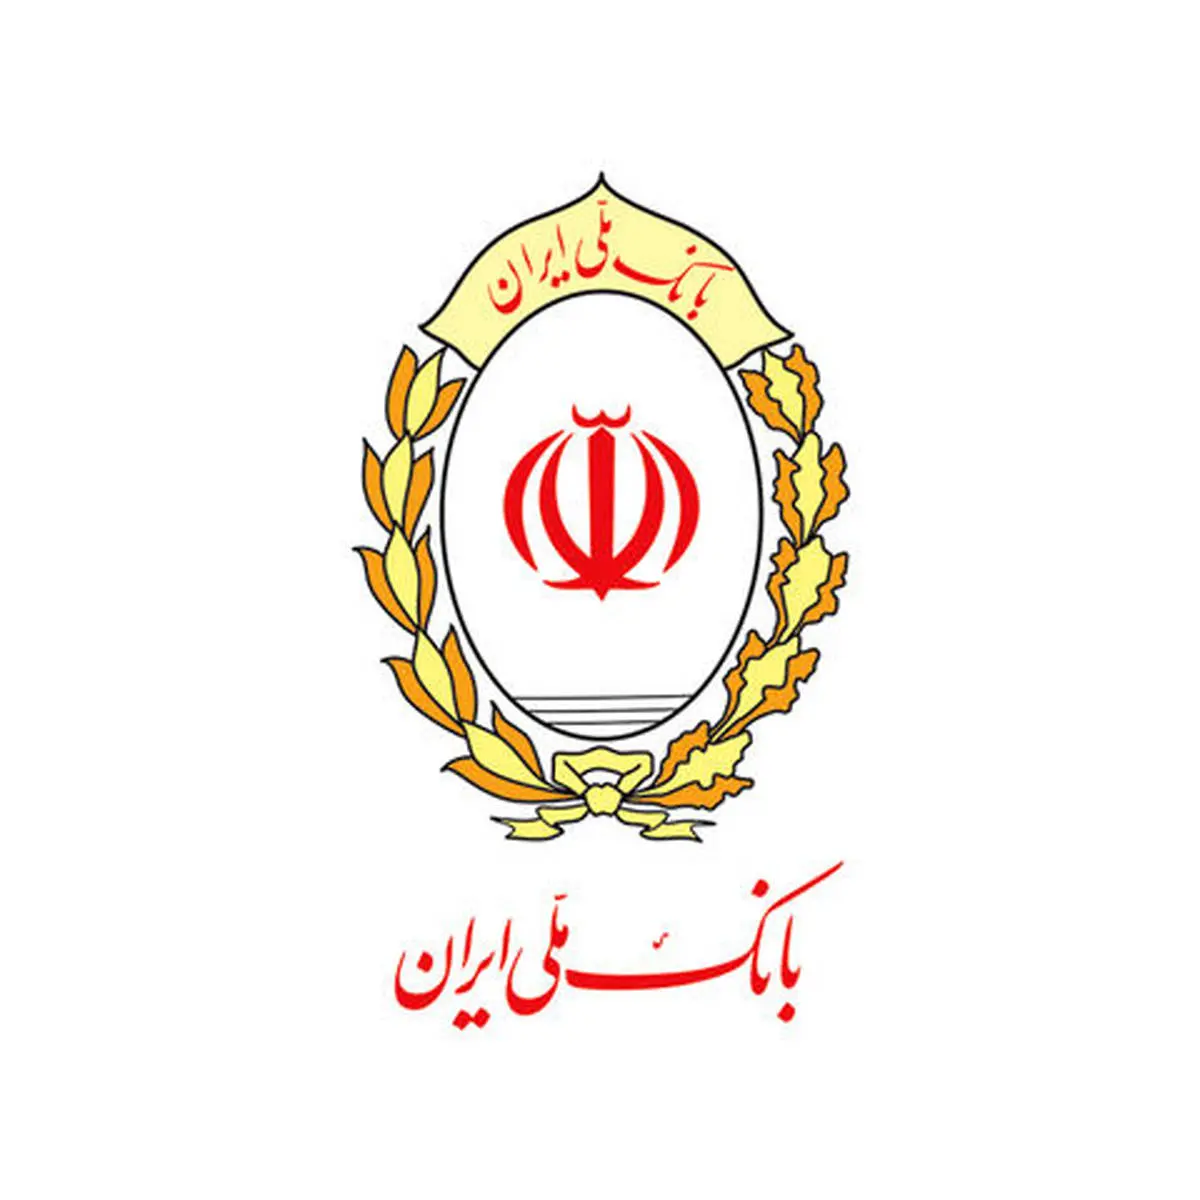 خرید دو هزار میلیارد ریال کالای بادوام داخلی با تسهیلات بانک ملی ایران تا پایان تیرماه